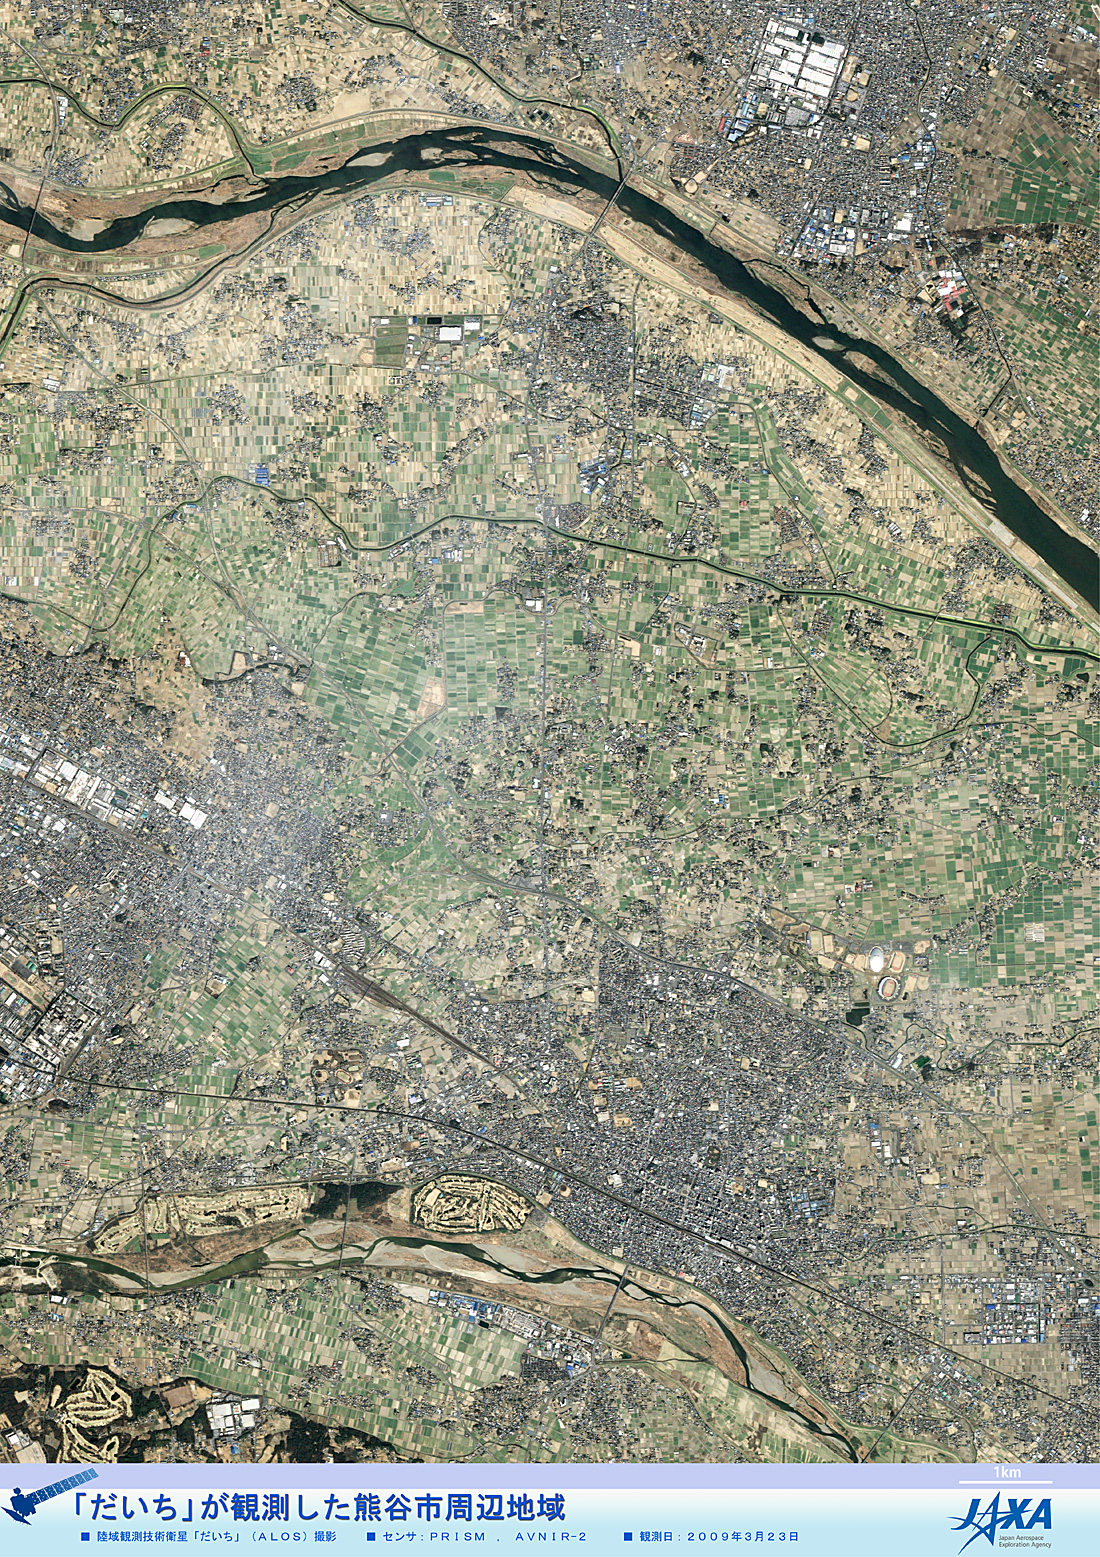 だいちから見た日本の都市 熊谷市周辺地域:衛星画像（ポスター仕上げ）